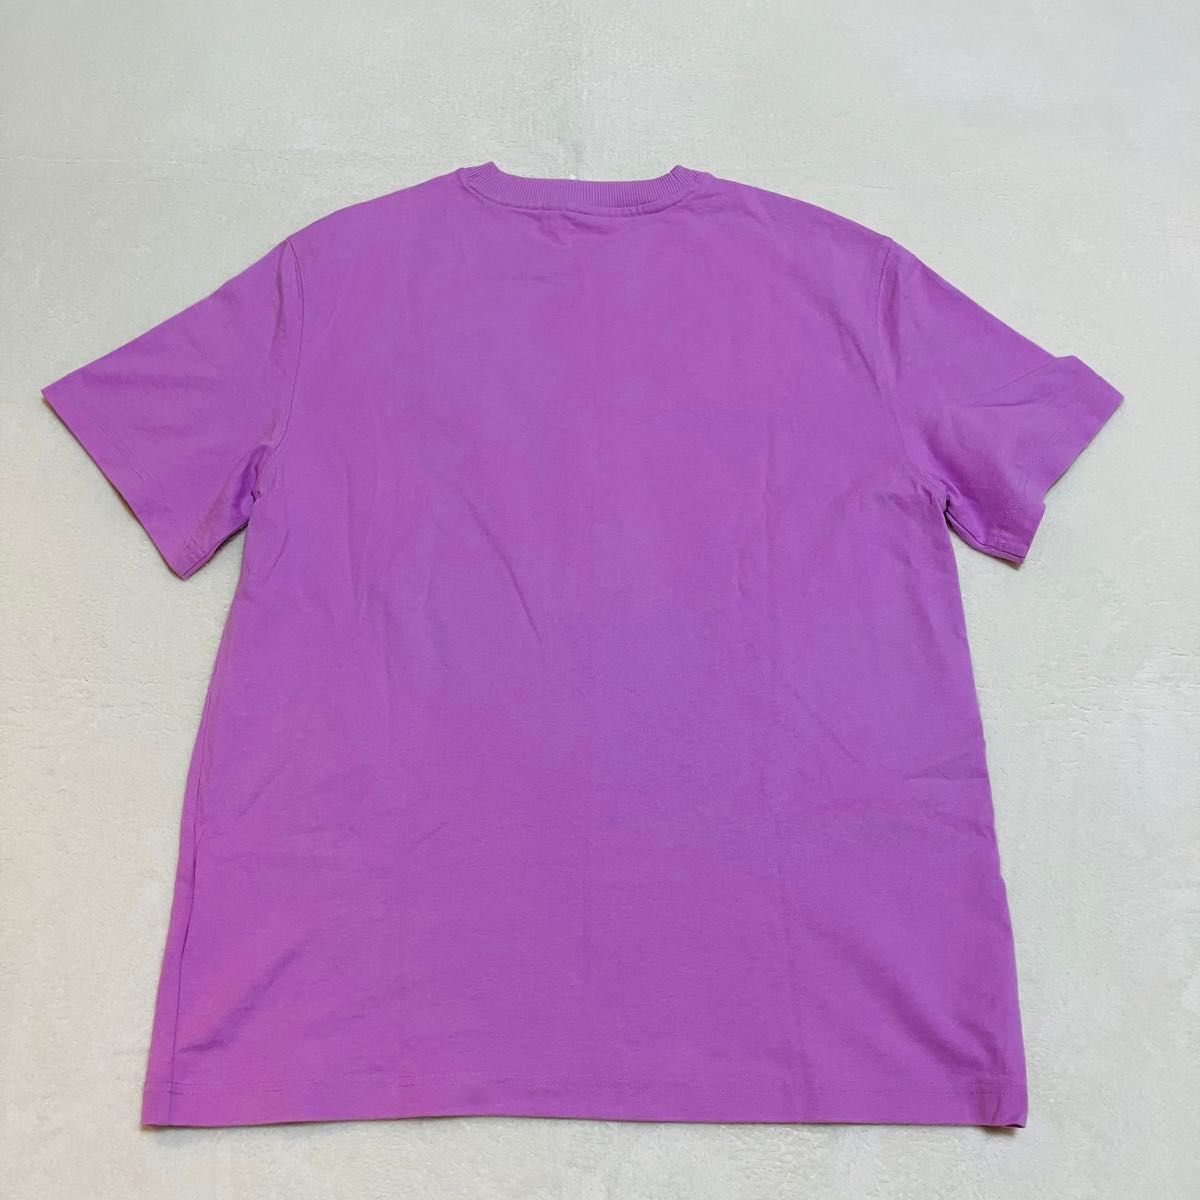 【美品】AMI Paris アミパリス プーマコラボTシャツ L ピンク 半袖 TEE ロゴ